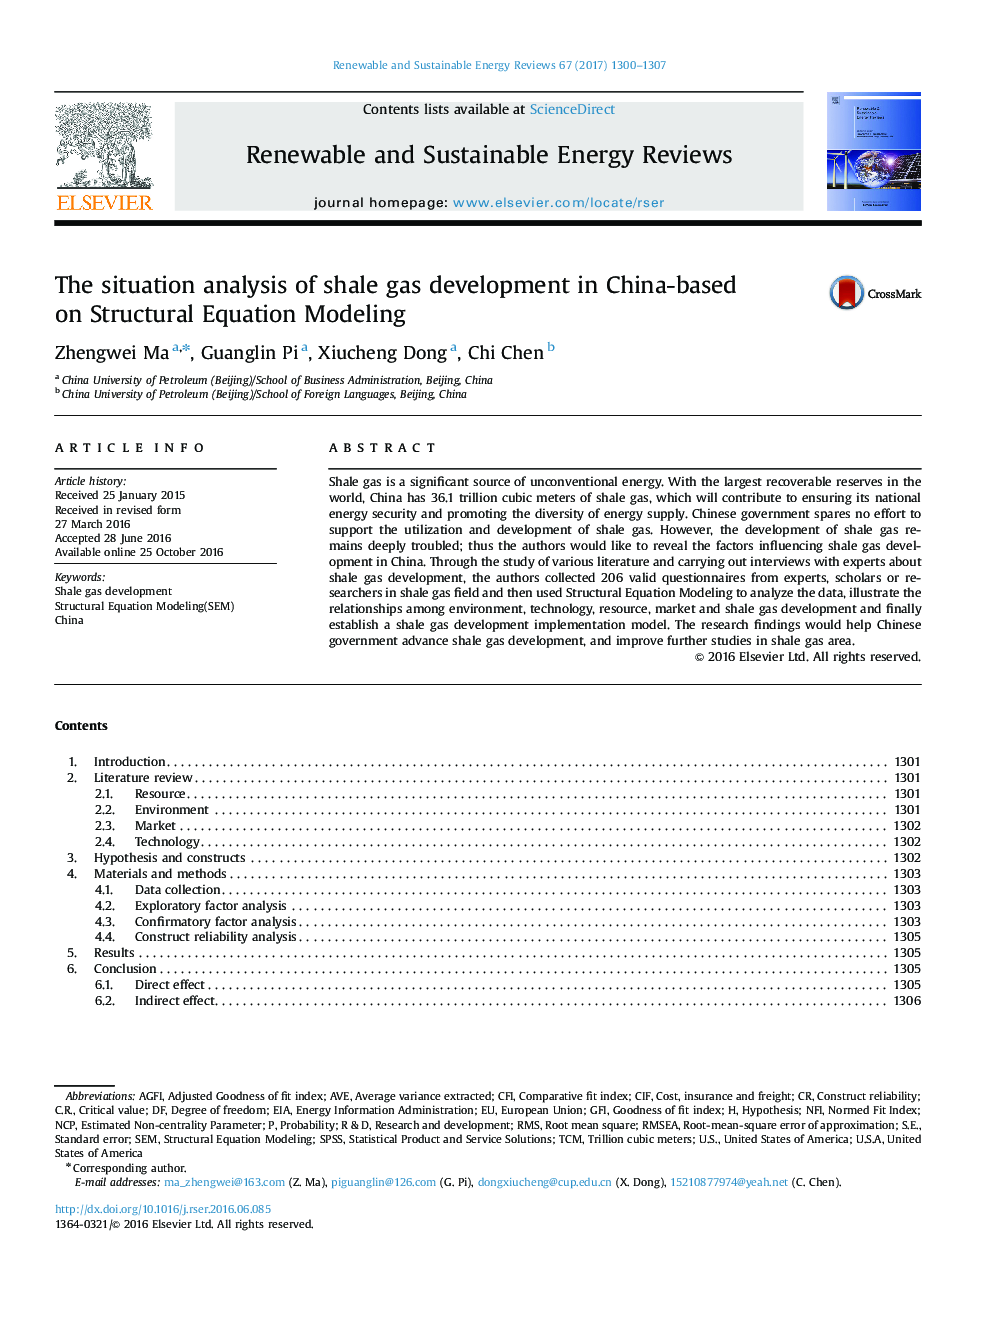 تجزیه و تحلیل وضعیت توسعه گاز شیل در چین بر اساس مدل سازی معادلات ساختاری 